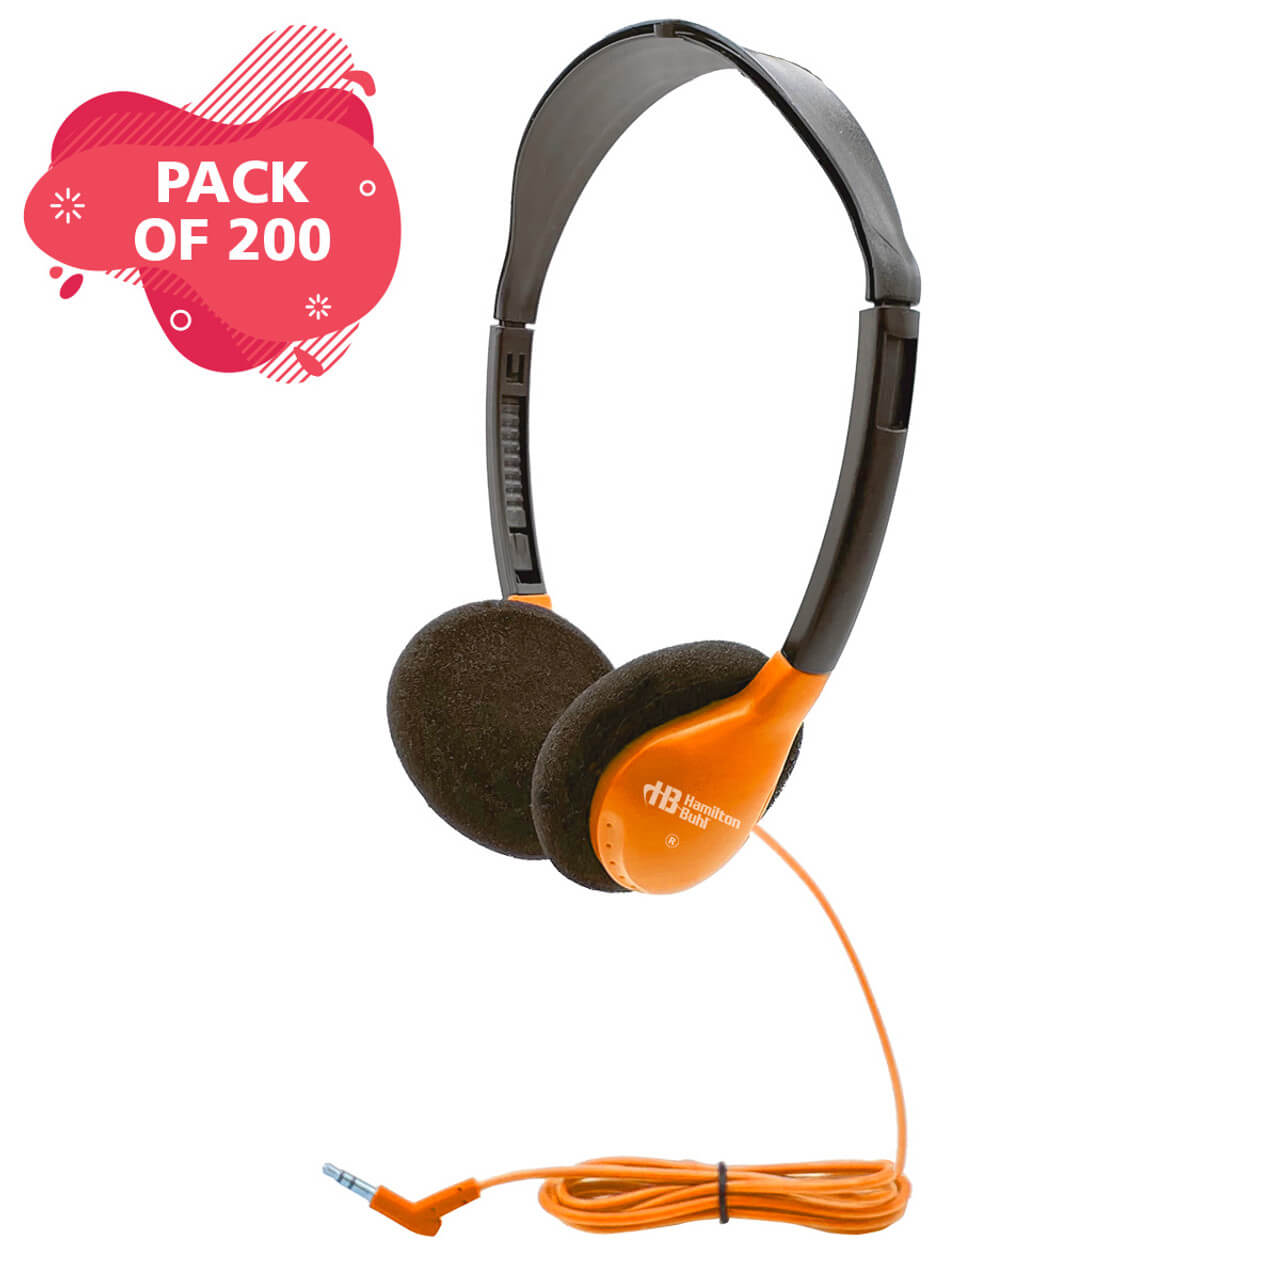 HamiltonBuhl - Auriculares estéreo personales supraaurales, color naranja, paquete de 200